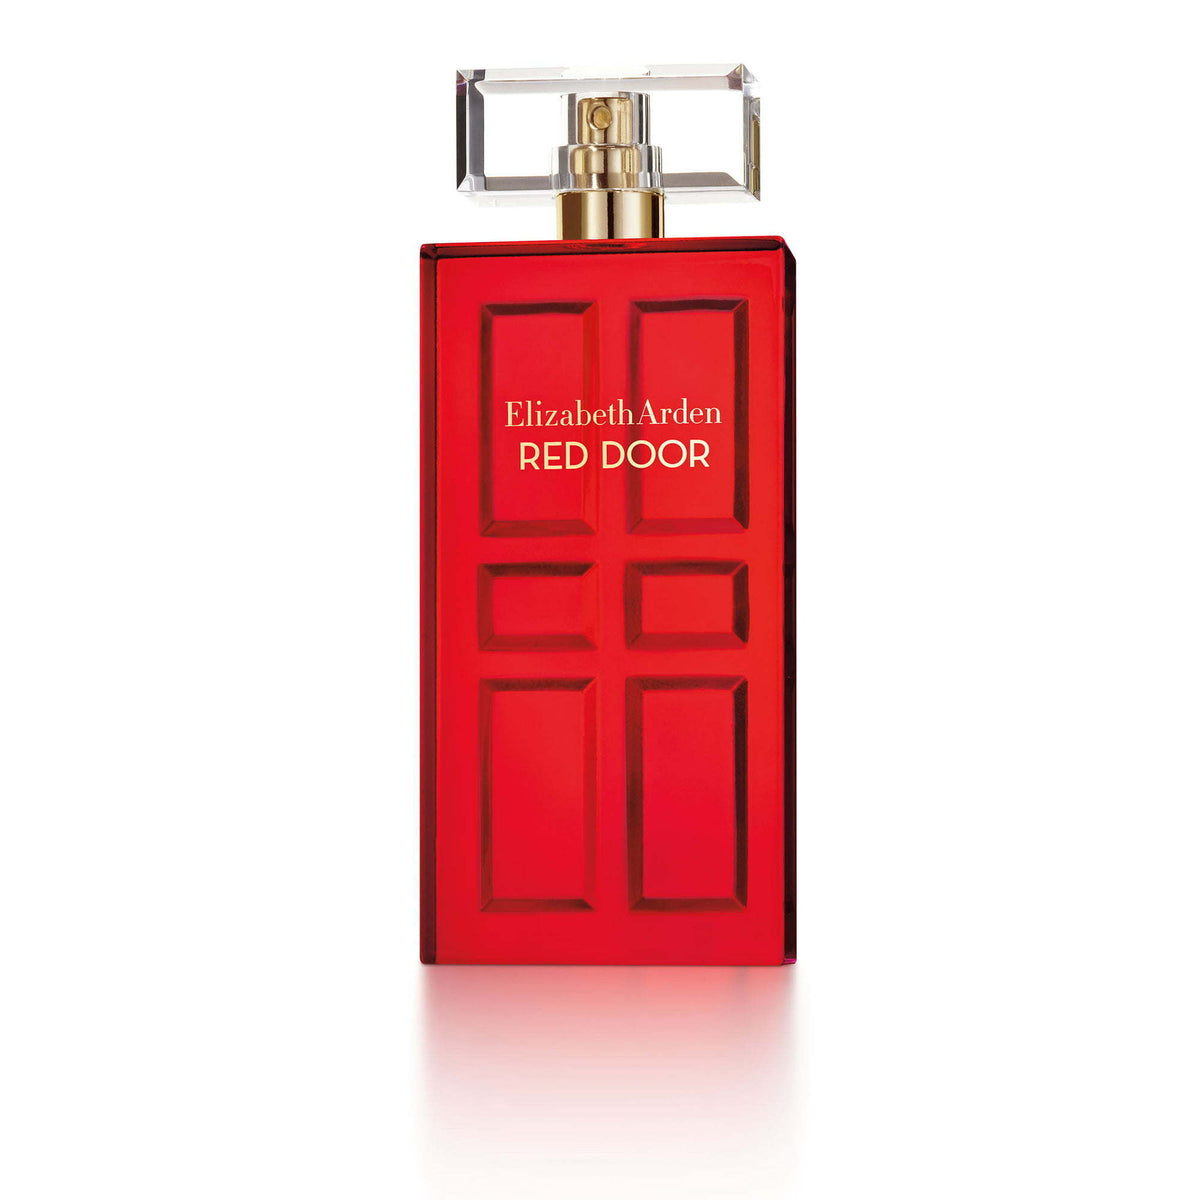 Elizabeth Arden Red Door Spray Natural, 3.3 fl. oz. - Premium Perfume Portfolio from Elizabeth Arden - Just $64! Shop now at Ida Louise Boutique